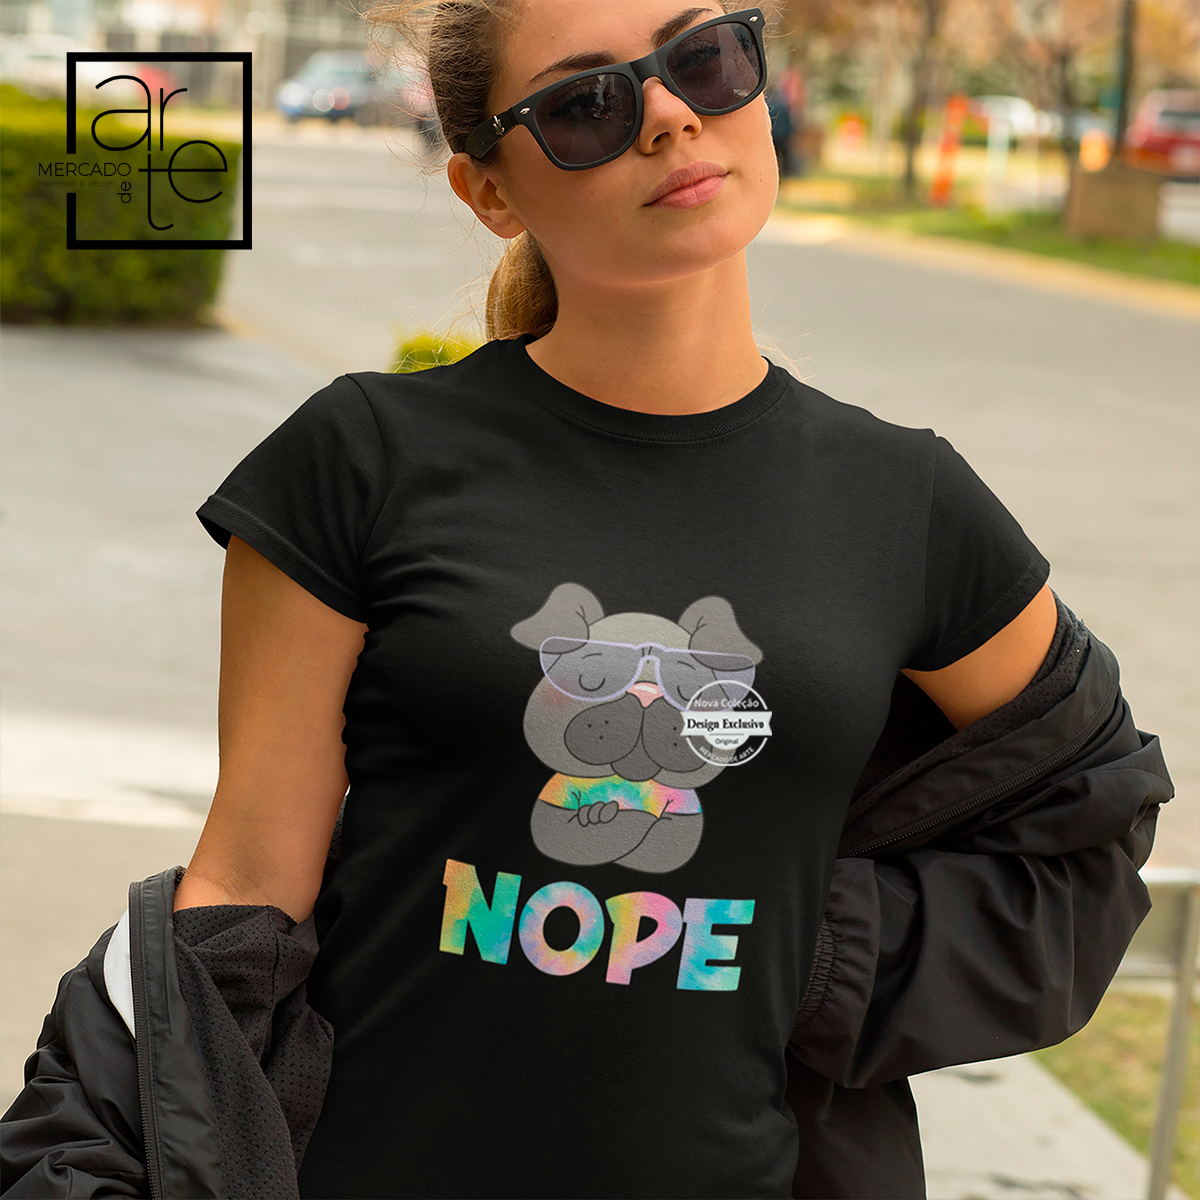 Novidade!   T-shirt 100% algodão cão "NOPE". Para quem é de poucas palavras esta t-shirt é presente ideal.   As nossas t-shirts são um presente super giro para aniversários. Personalize já a sua! Conheça a nossa coleção de t-shirts e personalize a sua para qualquer ocasião.  REF:TPS018  Material 100% de algodão